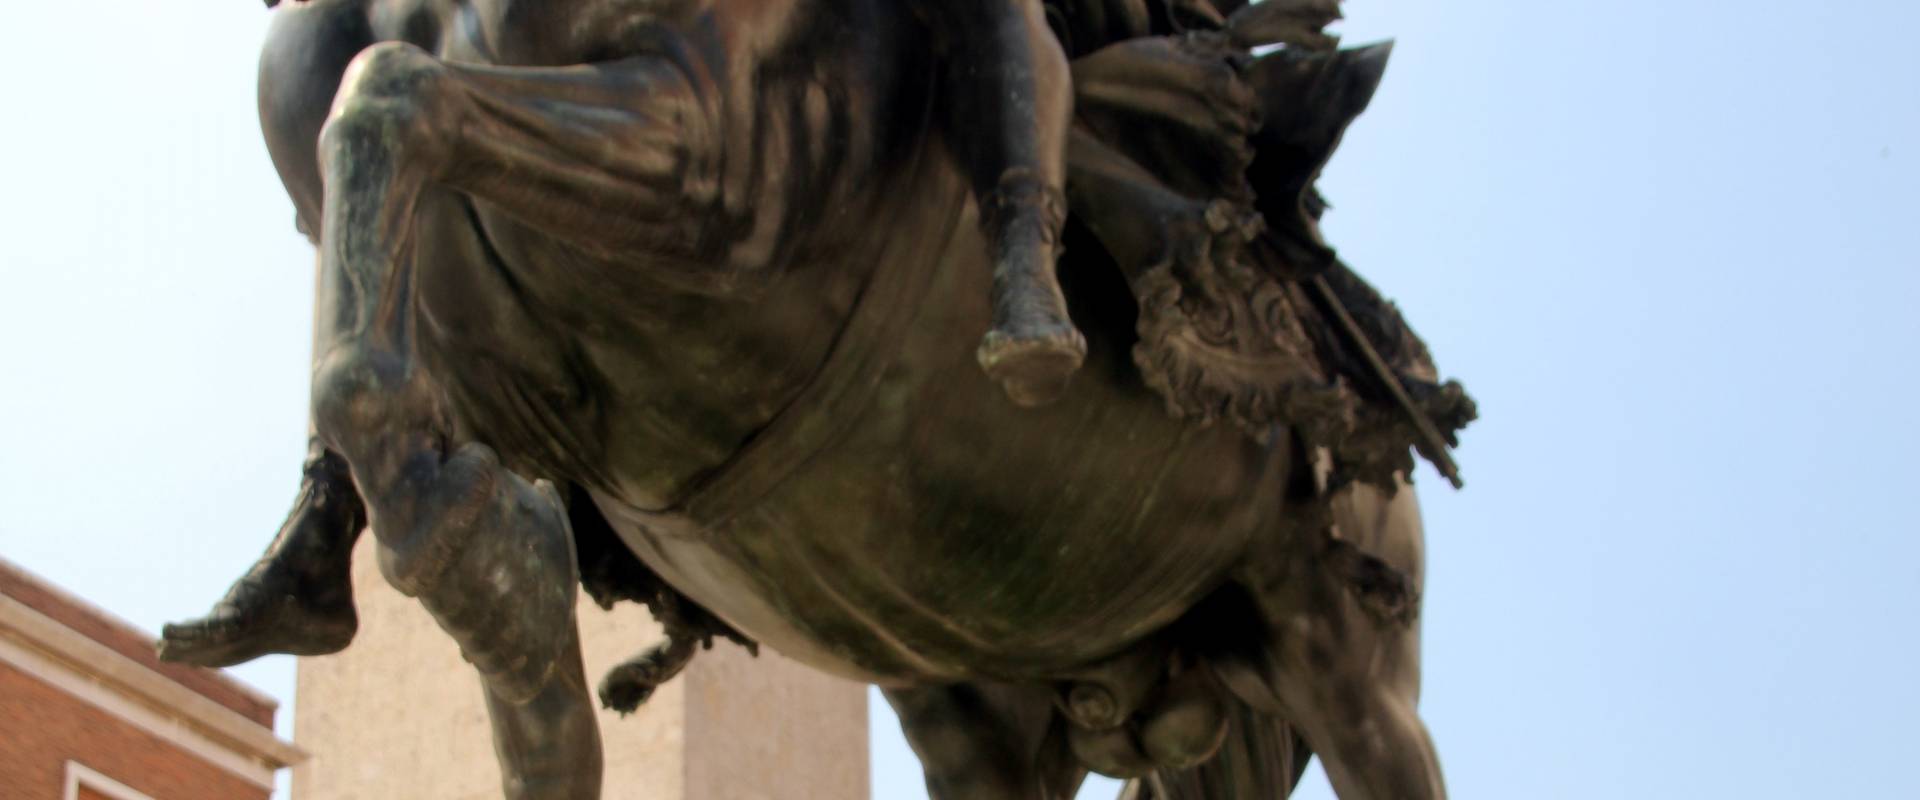 Francesco Mochi, Monumento in bronzo ad Alessandro Farnese 06 foto di Mongolo1984